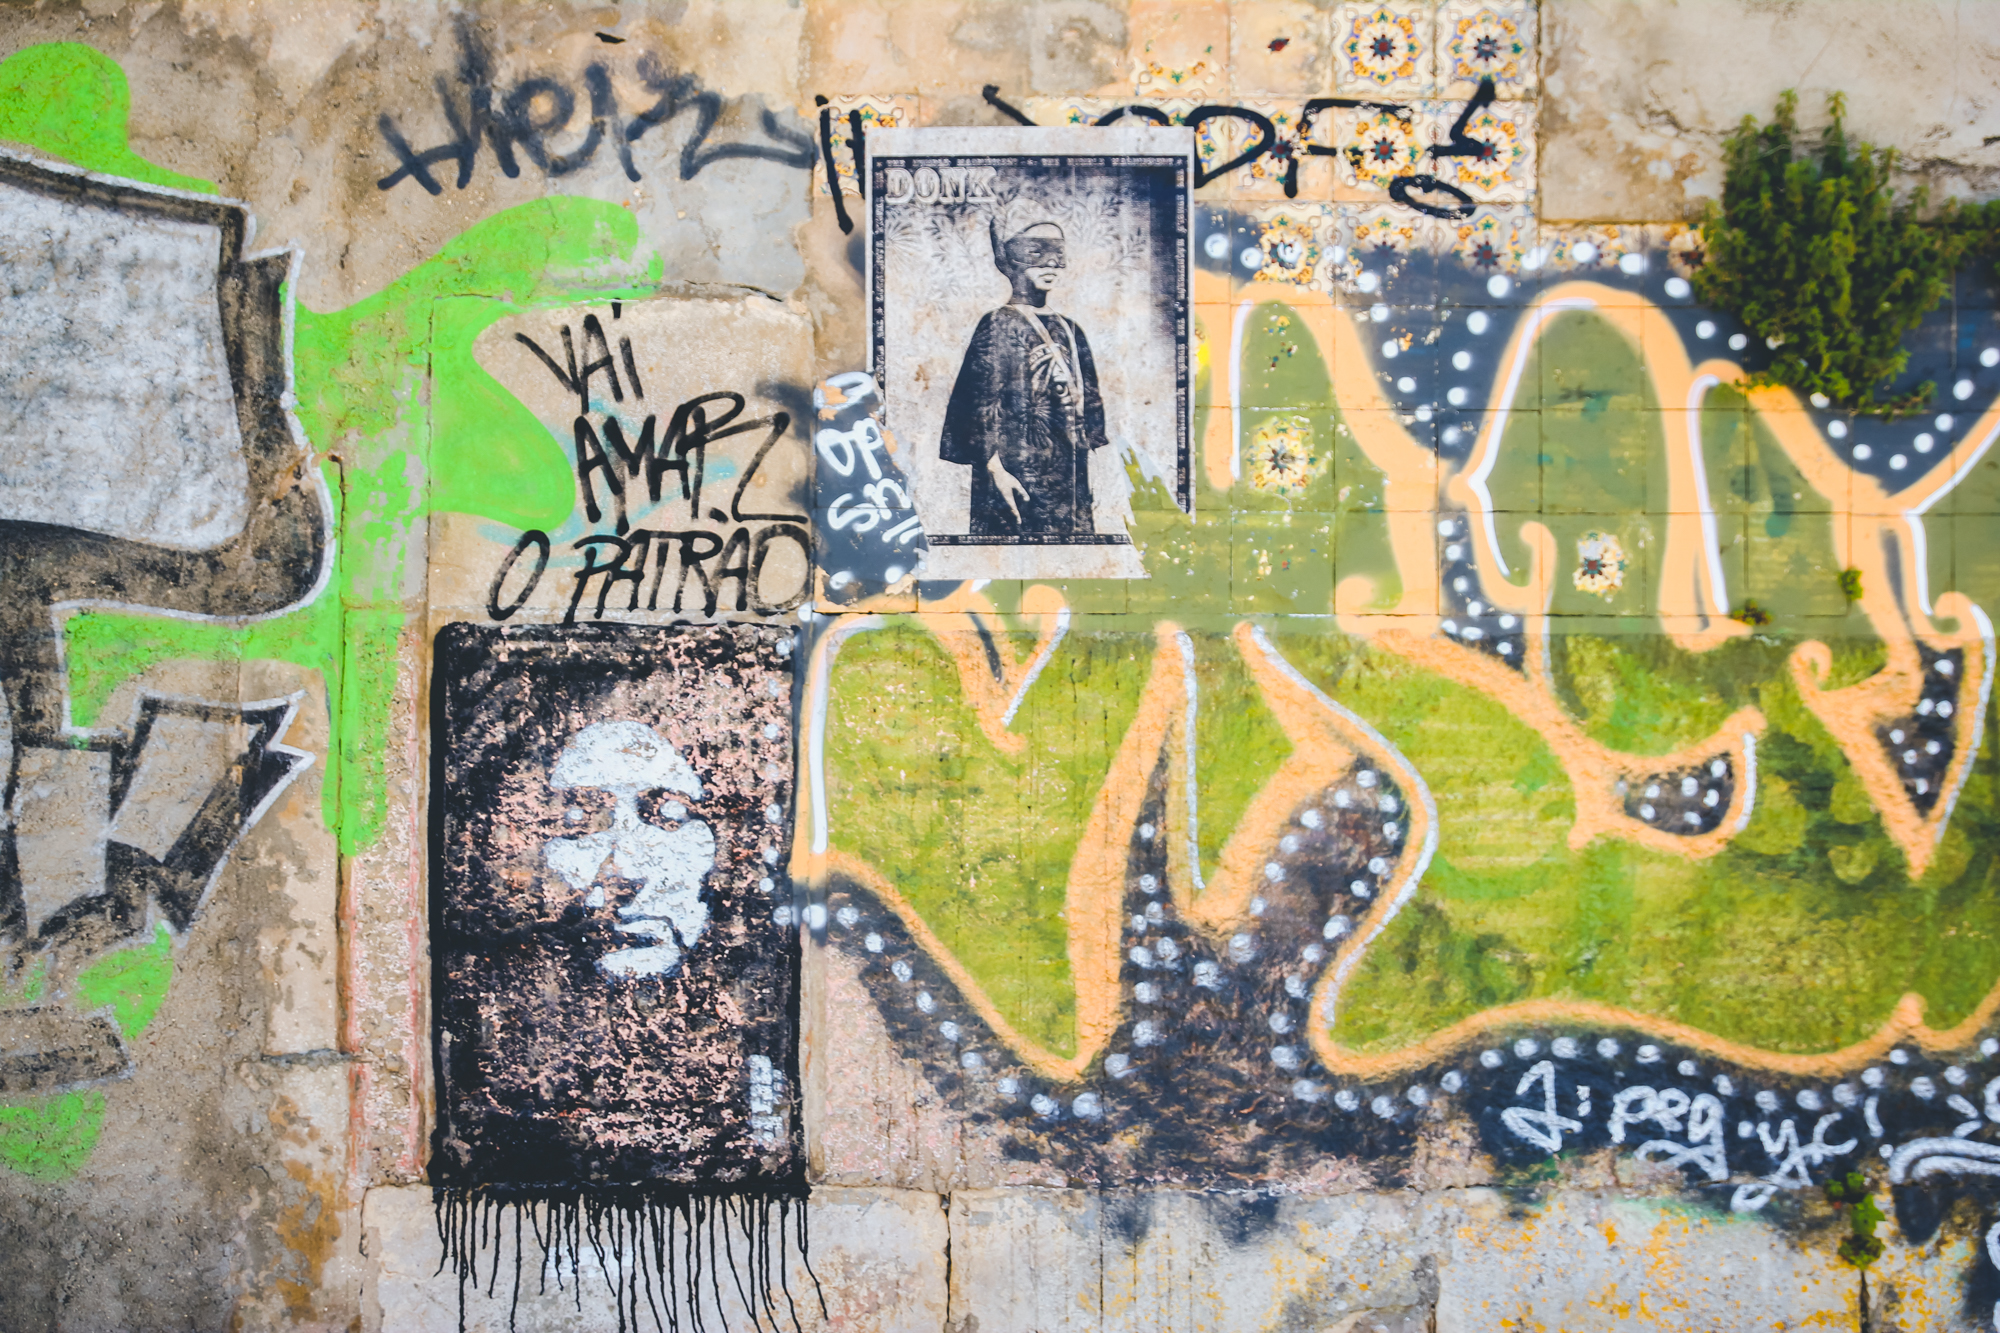 visiter Lisbonne : street art et Principe Real